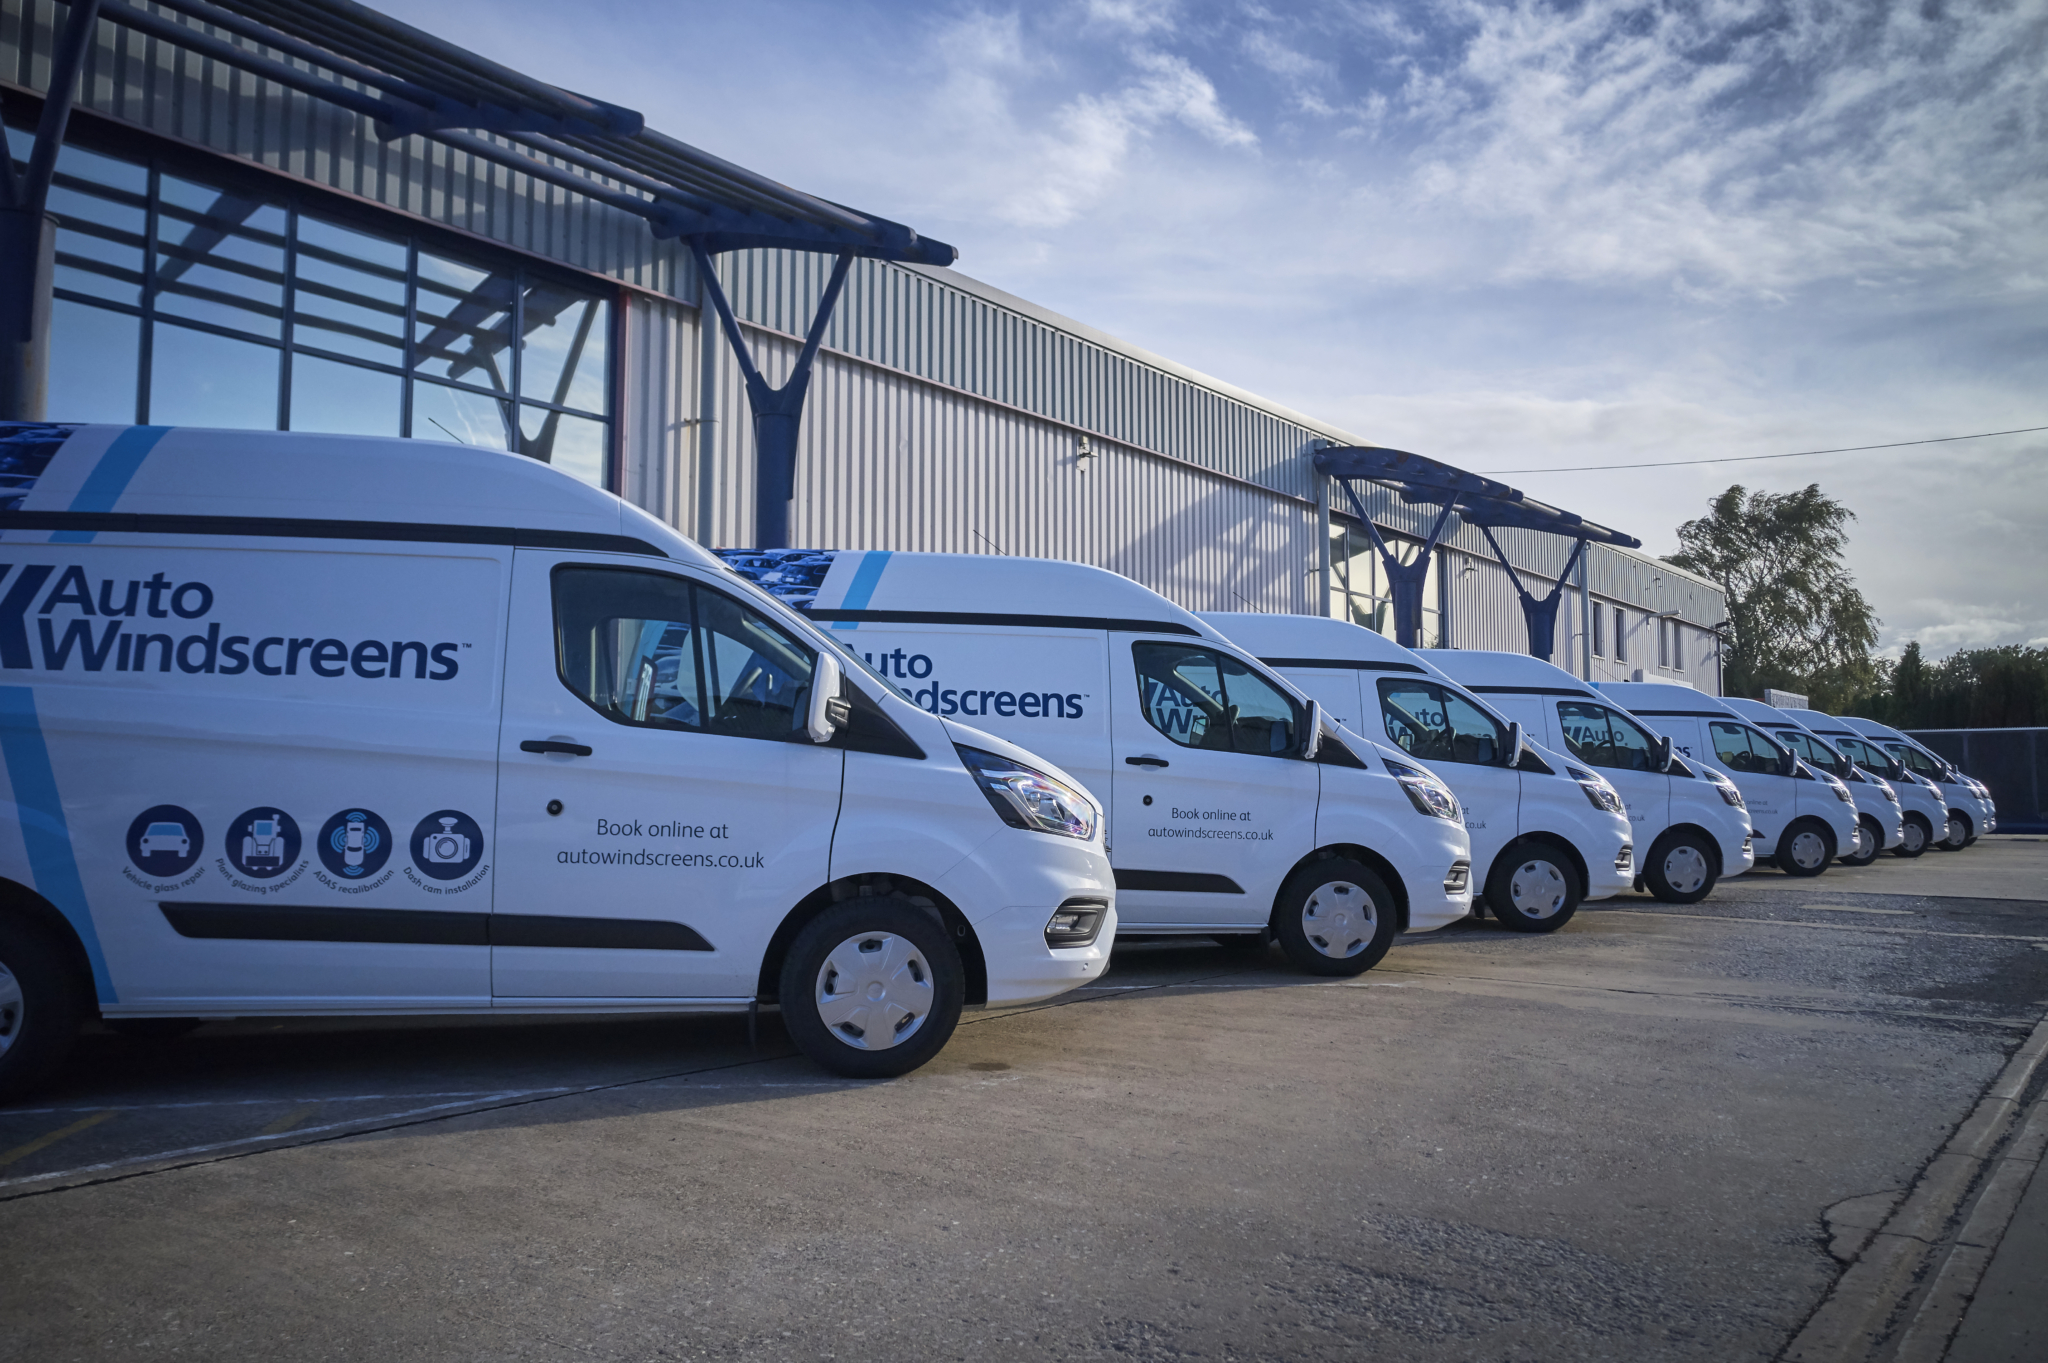 Micheldever Fleet Solutions supplies Auto Windscreens fleet tyres